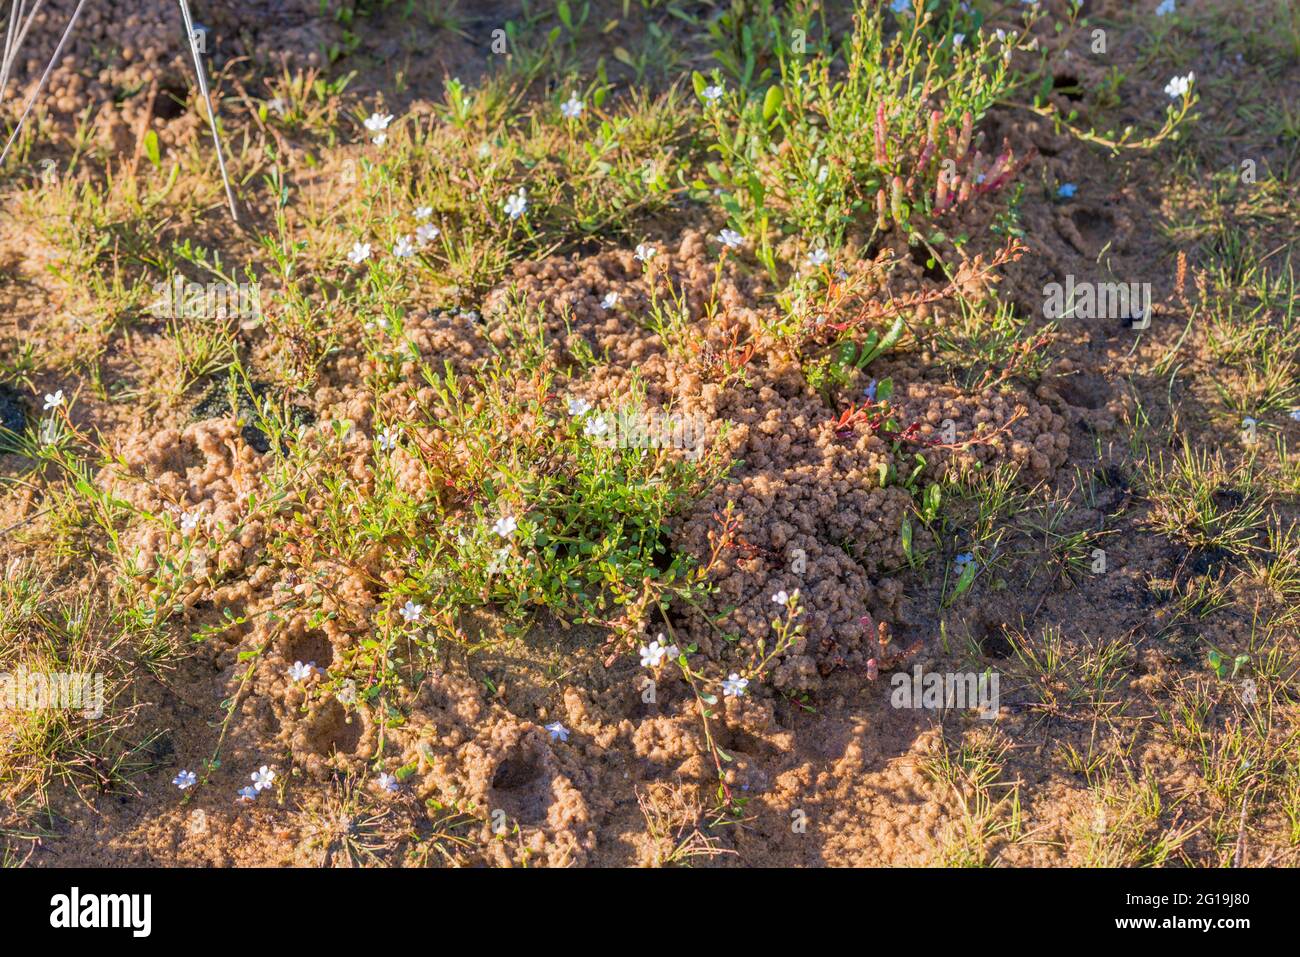 Wilsonia backousei (Wilsonia a foglie strette) un arbusto di origine bianca fiorente che cresce ai margini del lago Wollumboola, nuovo Galles del Sud, Austr Foto Stock